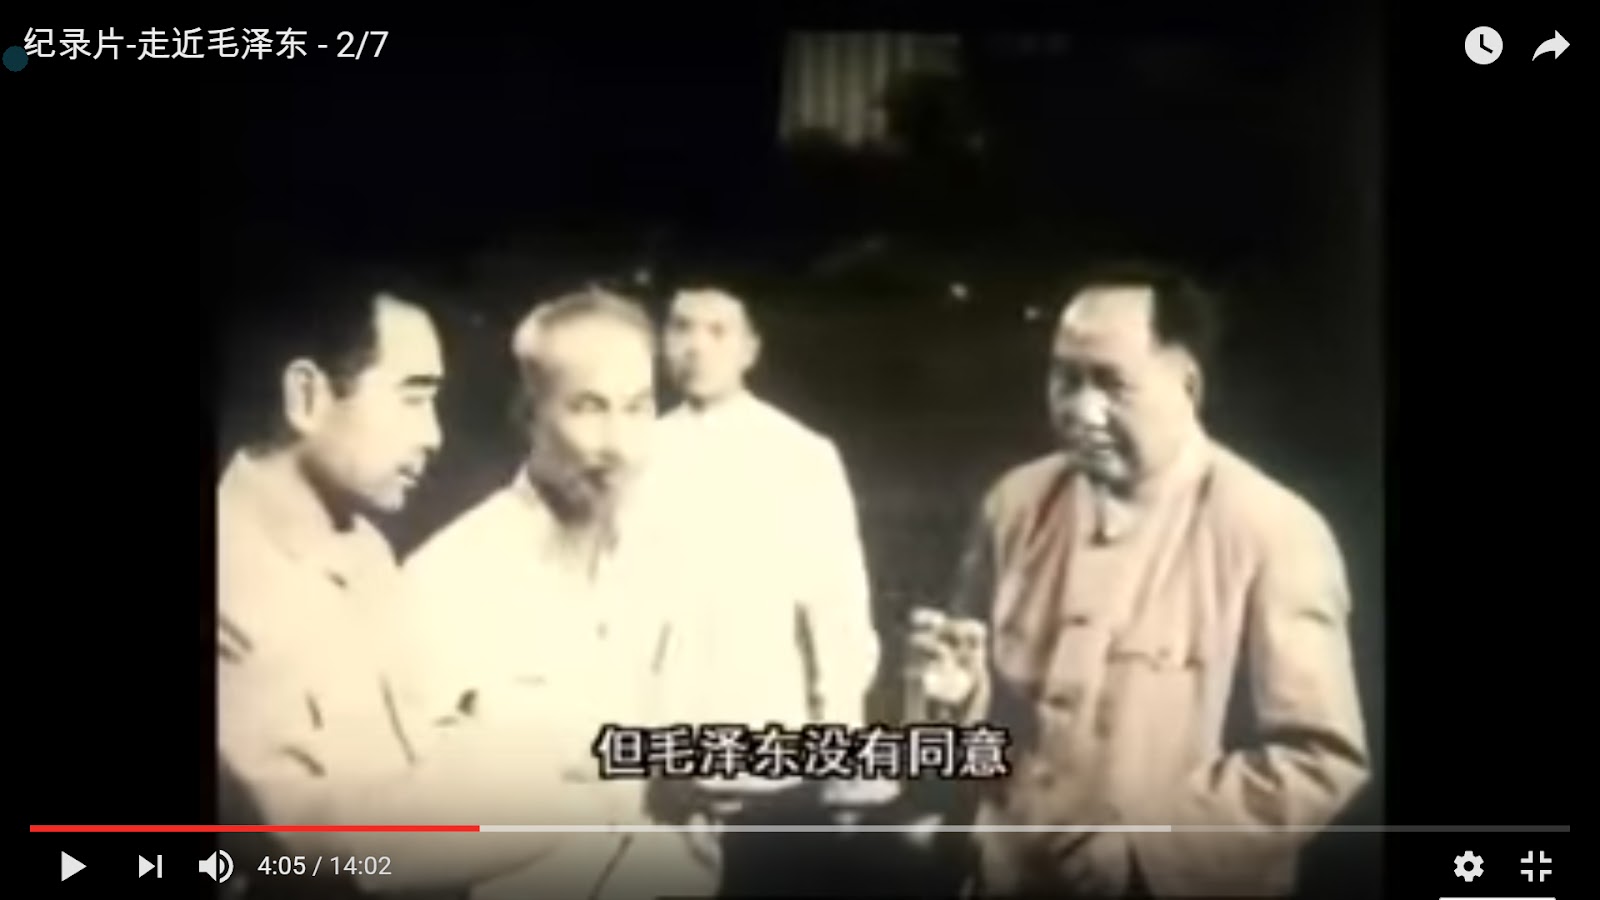 Chu Ân Lai, Hồ Chí Minh và Mao Trạch Đông cụng ly 04.05 minute - blurry version.jpg